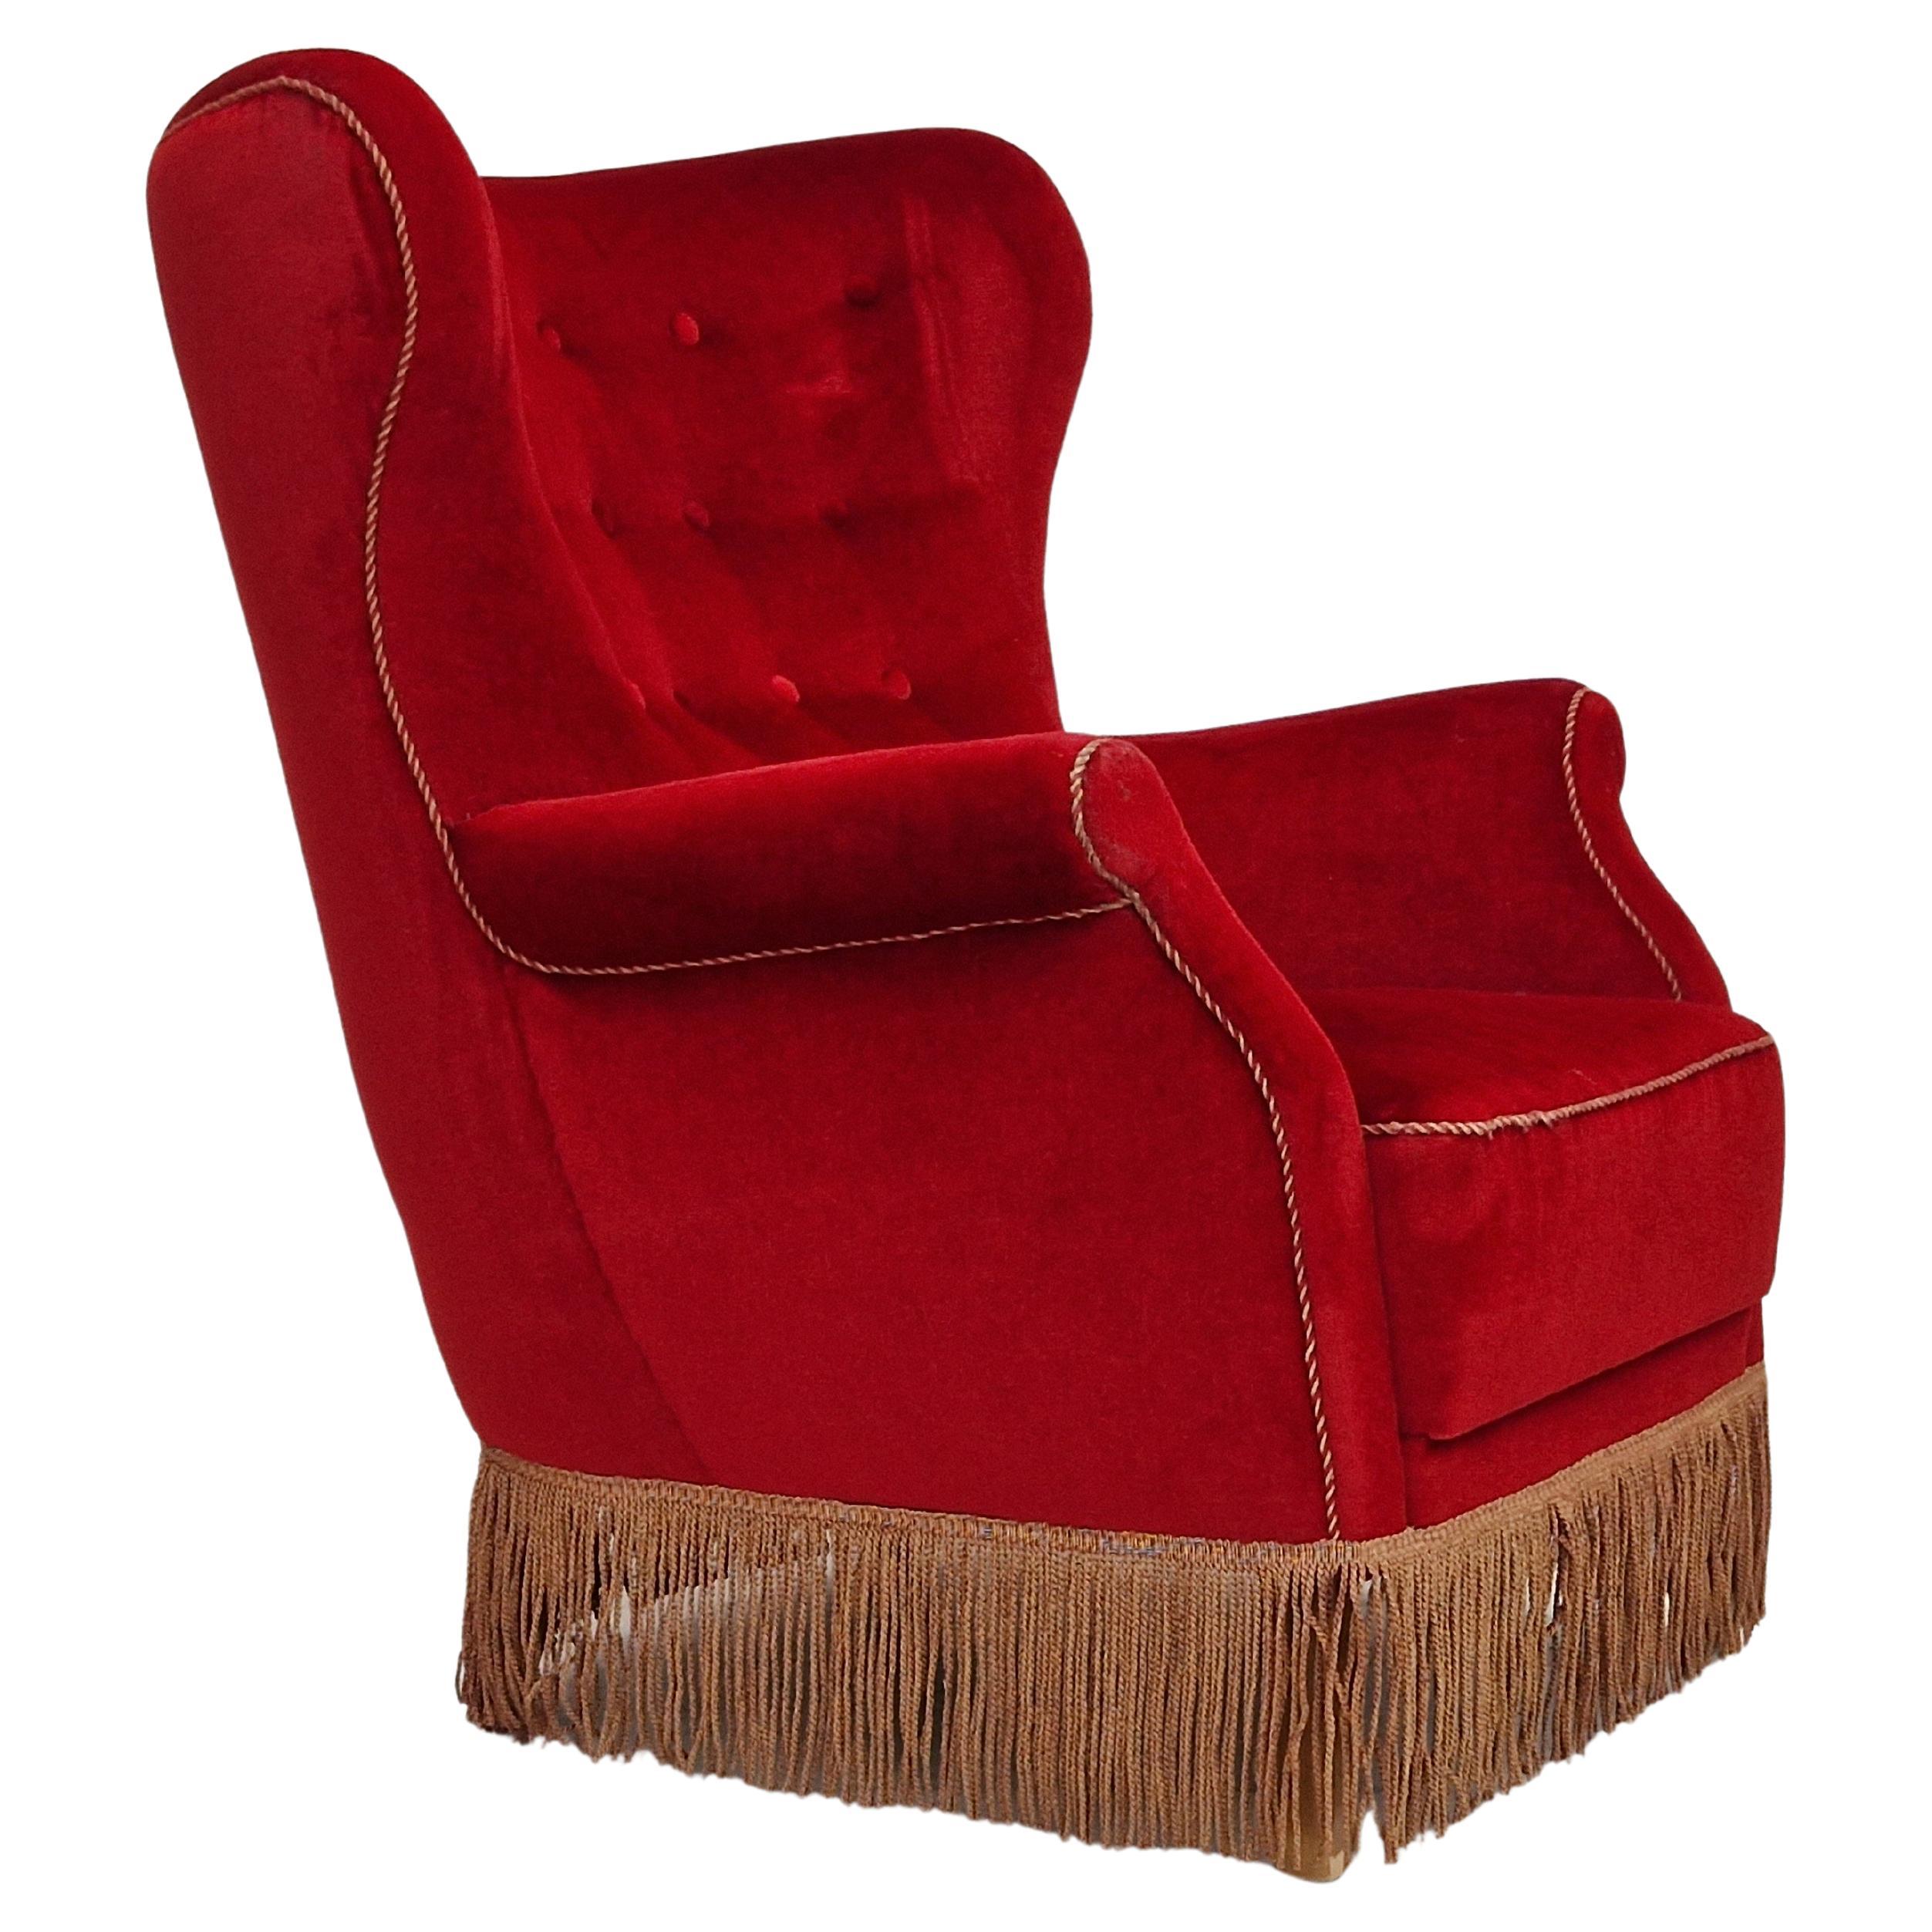 1960s, Danish Vintage Highback Armchair in Cherry-Red Velvet For Sale